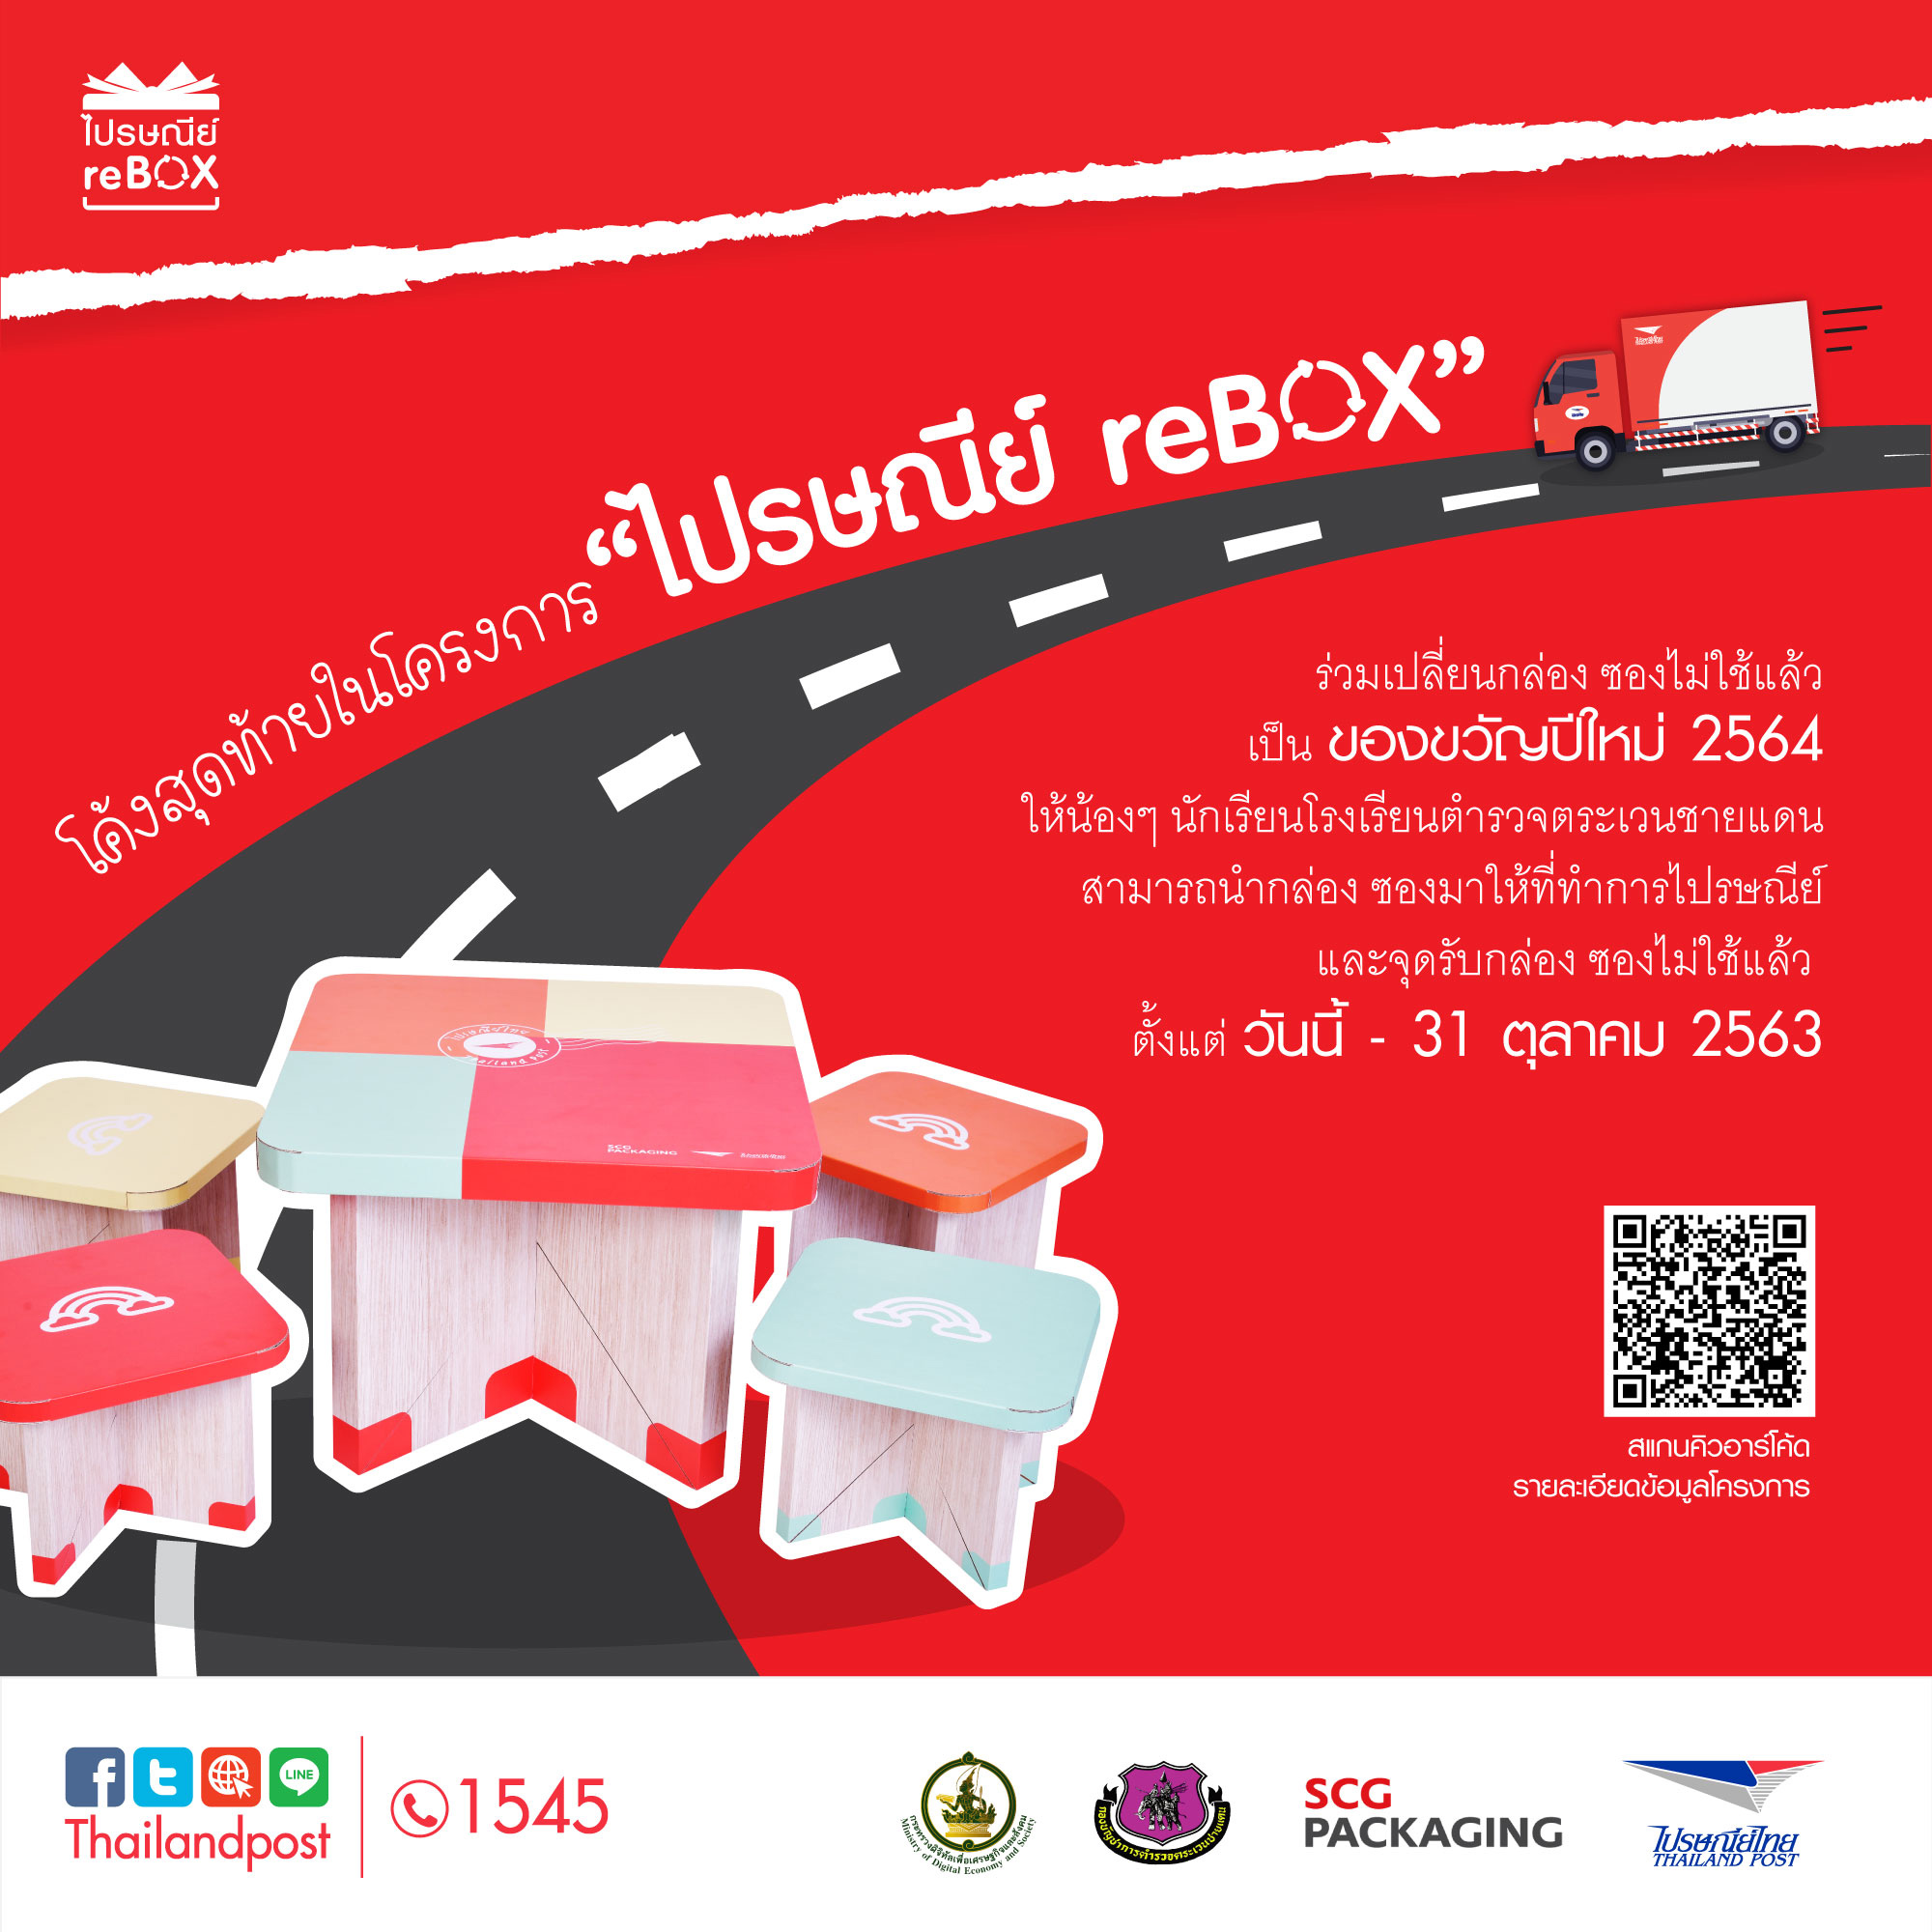 โค้งสุดท้าย!! โครงการไปรษณีย์ reBOX ไปรษณีย์ไทยชวนเปลี่ยนกล่อง/ซอง เป็นของขวัญปีใหม่ให้น้อง ถึง 31 ตุลาคมนี้